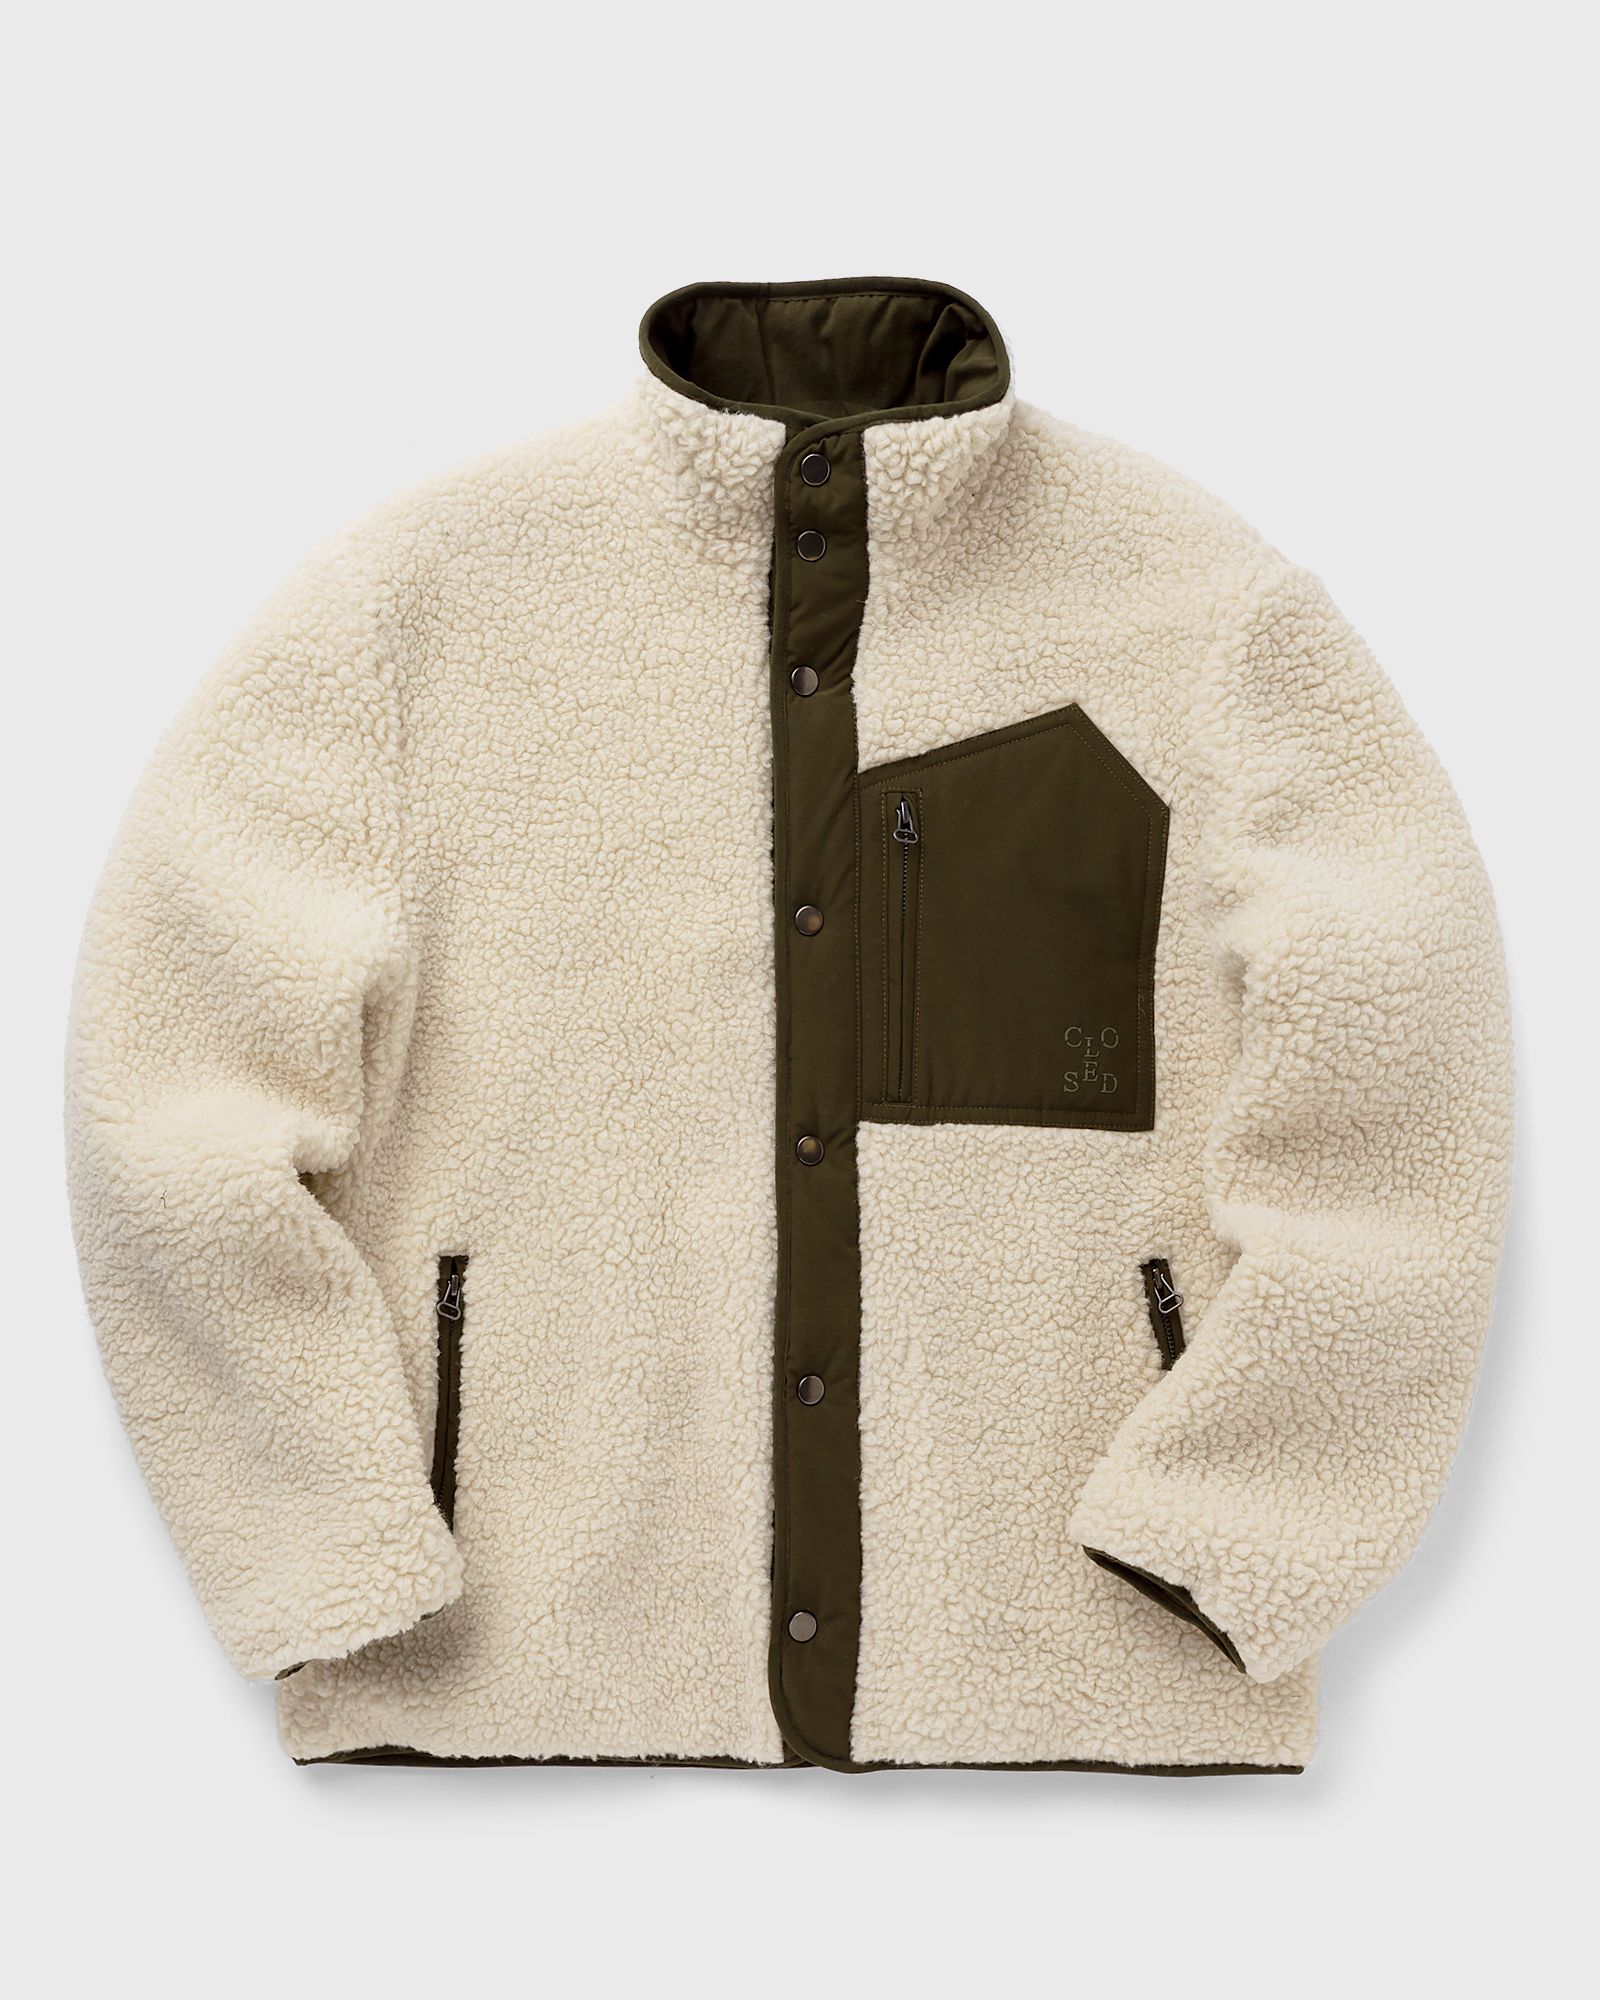 CLOSED - teddy jacket men fleece jackets beige in größe:l